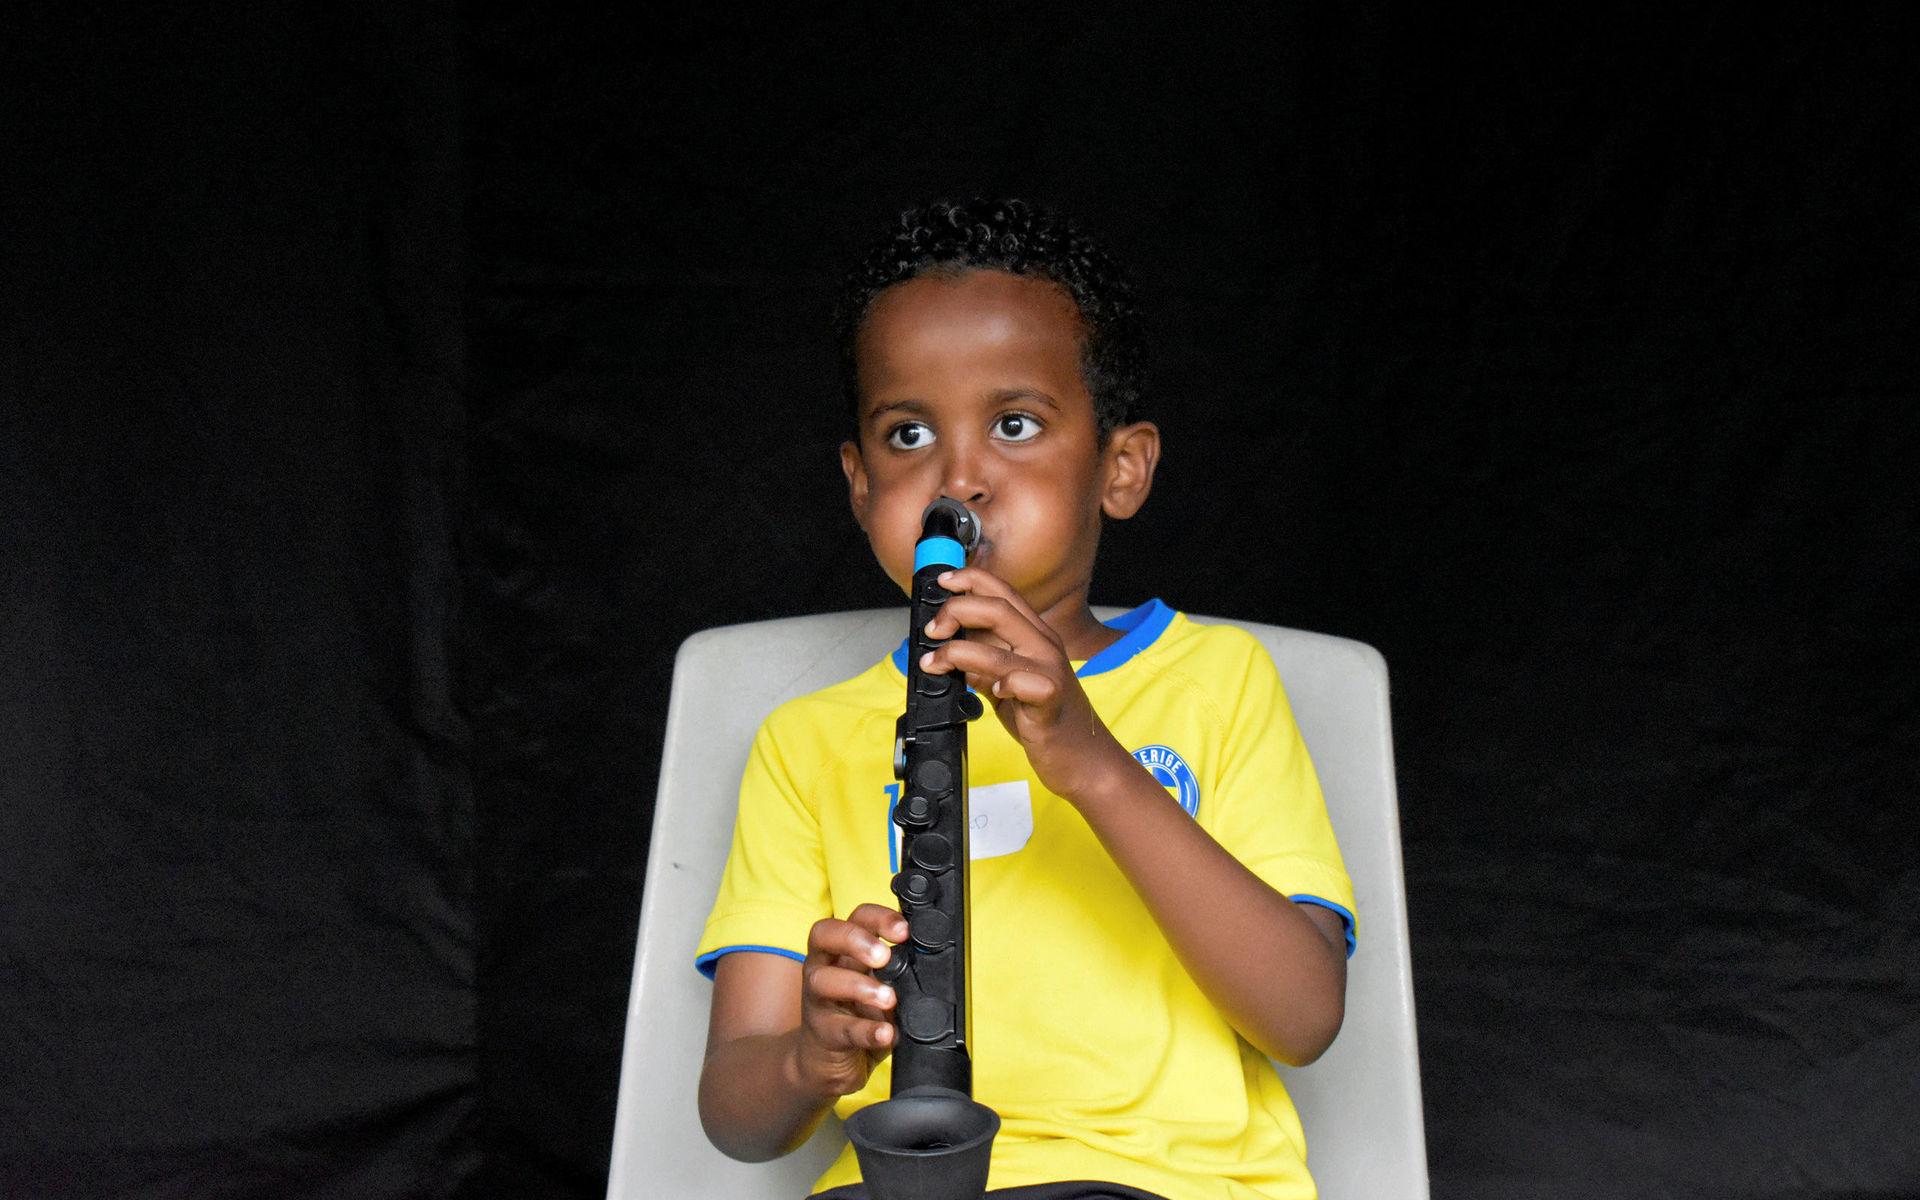 Mohammed Mahamad älskar musik och vill lära sig spela många instrument i framtiden.